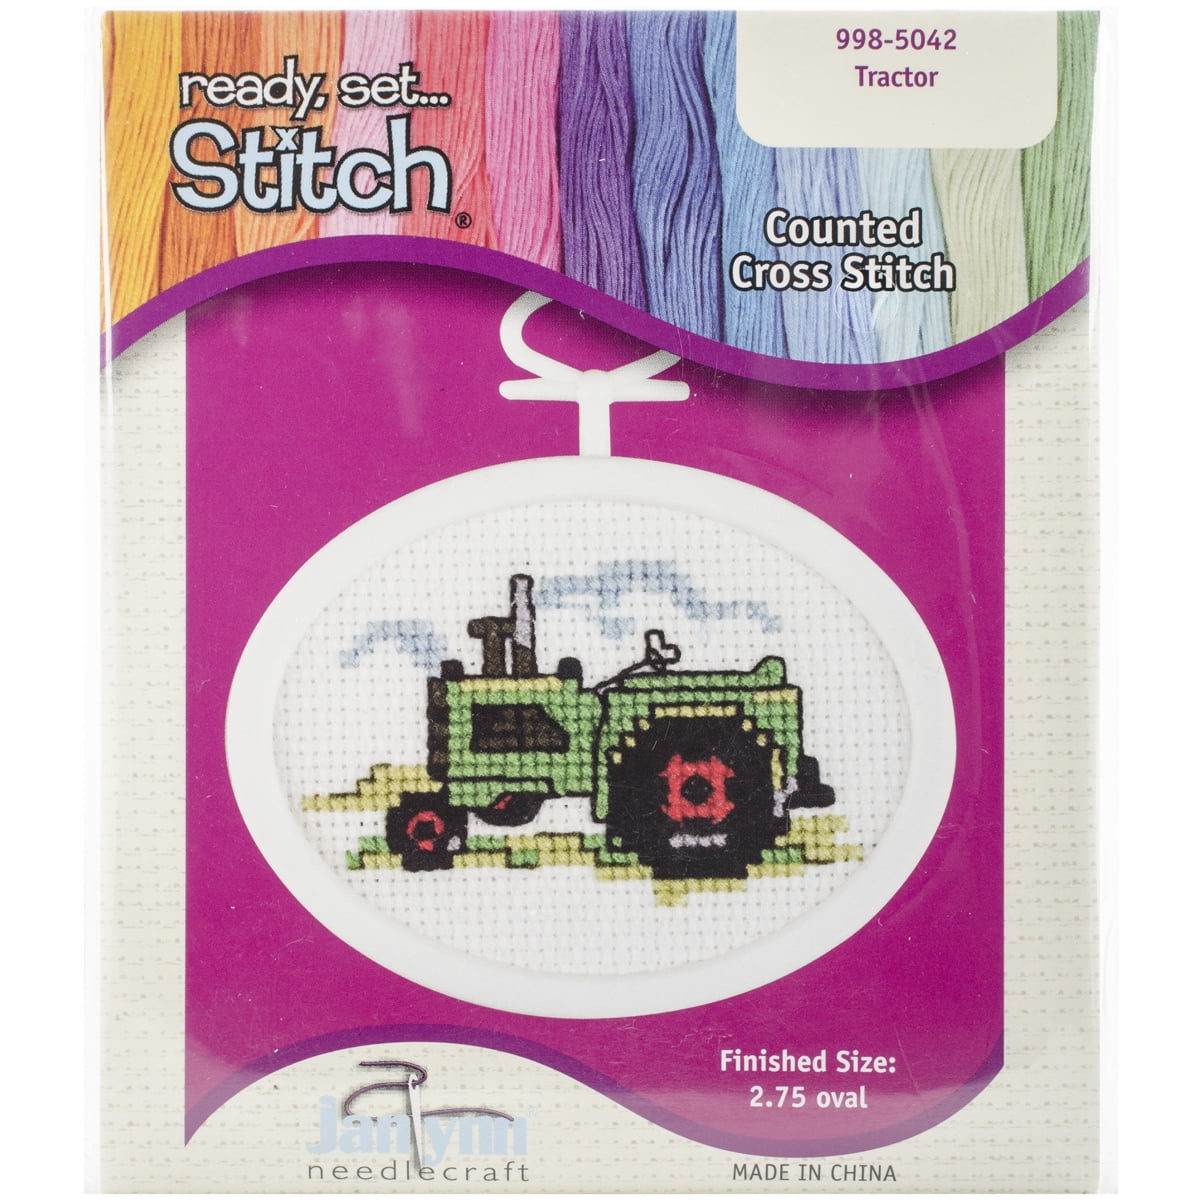 Semanka Stamped Cross Stitch Kits,Dragon,Funny Cross Stitch Kits for  Adults,Easy Counted Cross Stitch Kits for Beginners,15.74” X 19.68”